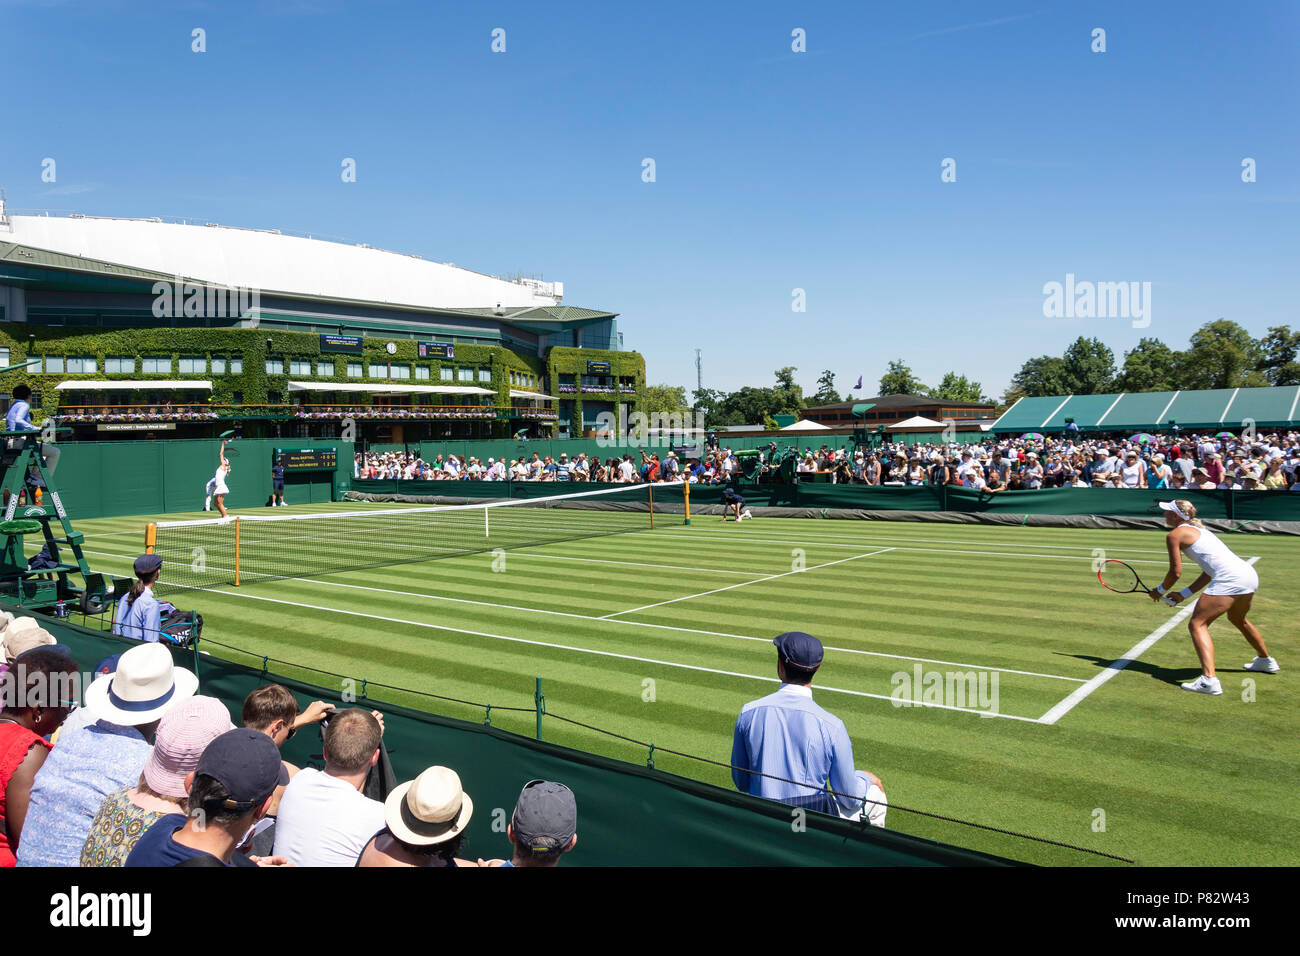 Woman's Match auf außerhalb des Gerichtes 8 an den Meisterschaften 2018, Wimbledon, London Borough von Merton, Greater London, England, Vereinigtes Königreich Stockfoto